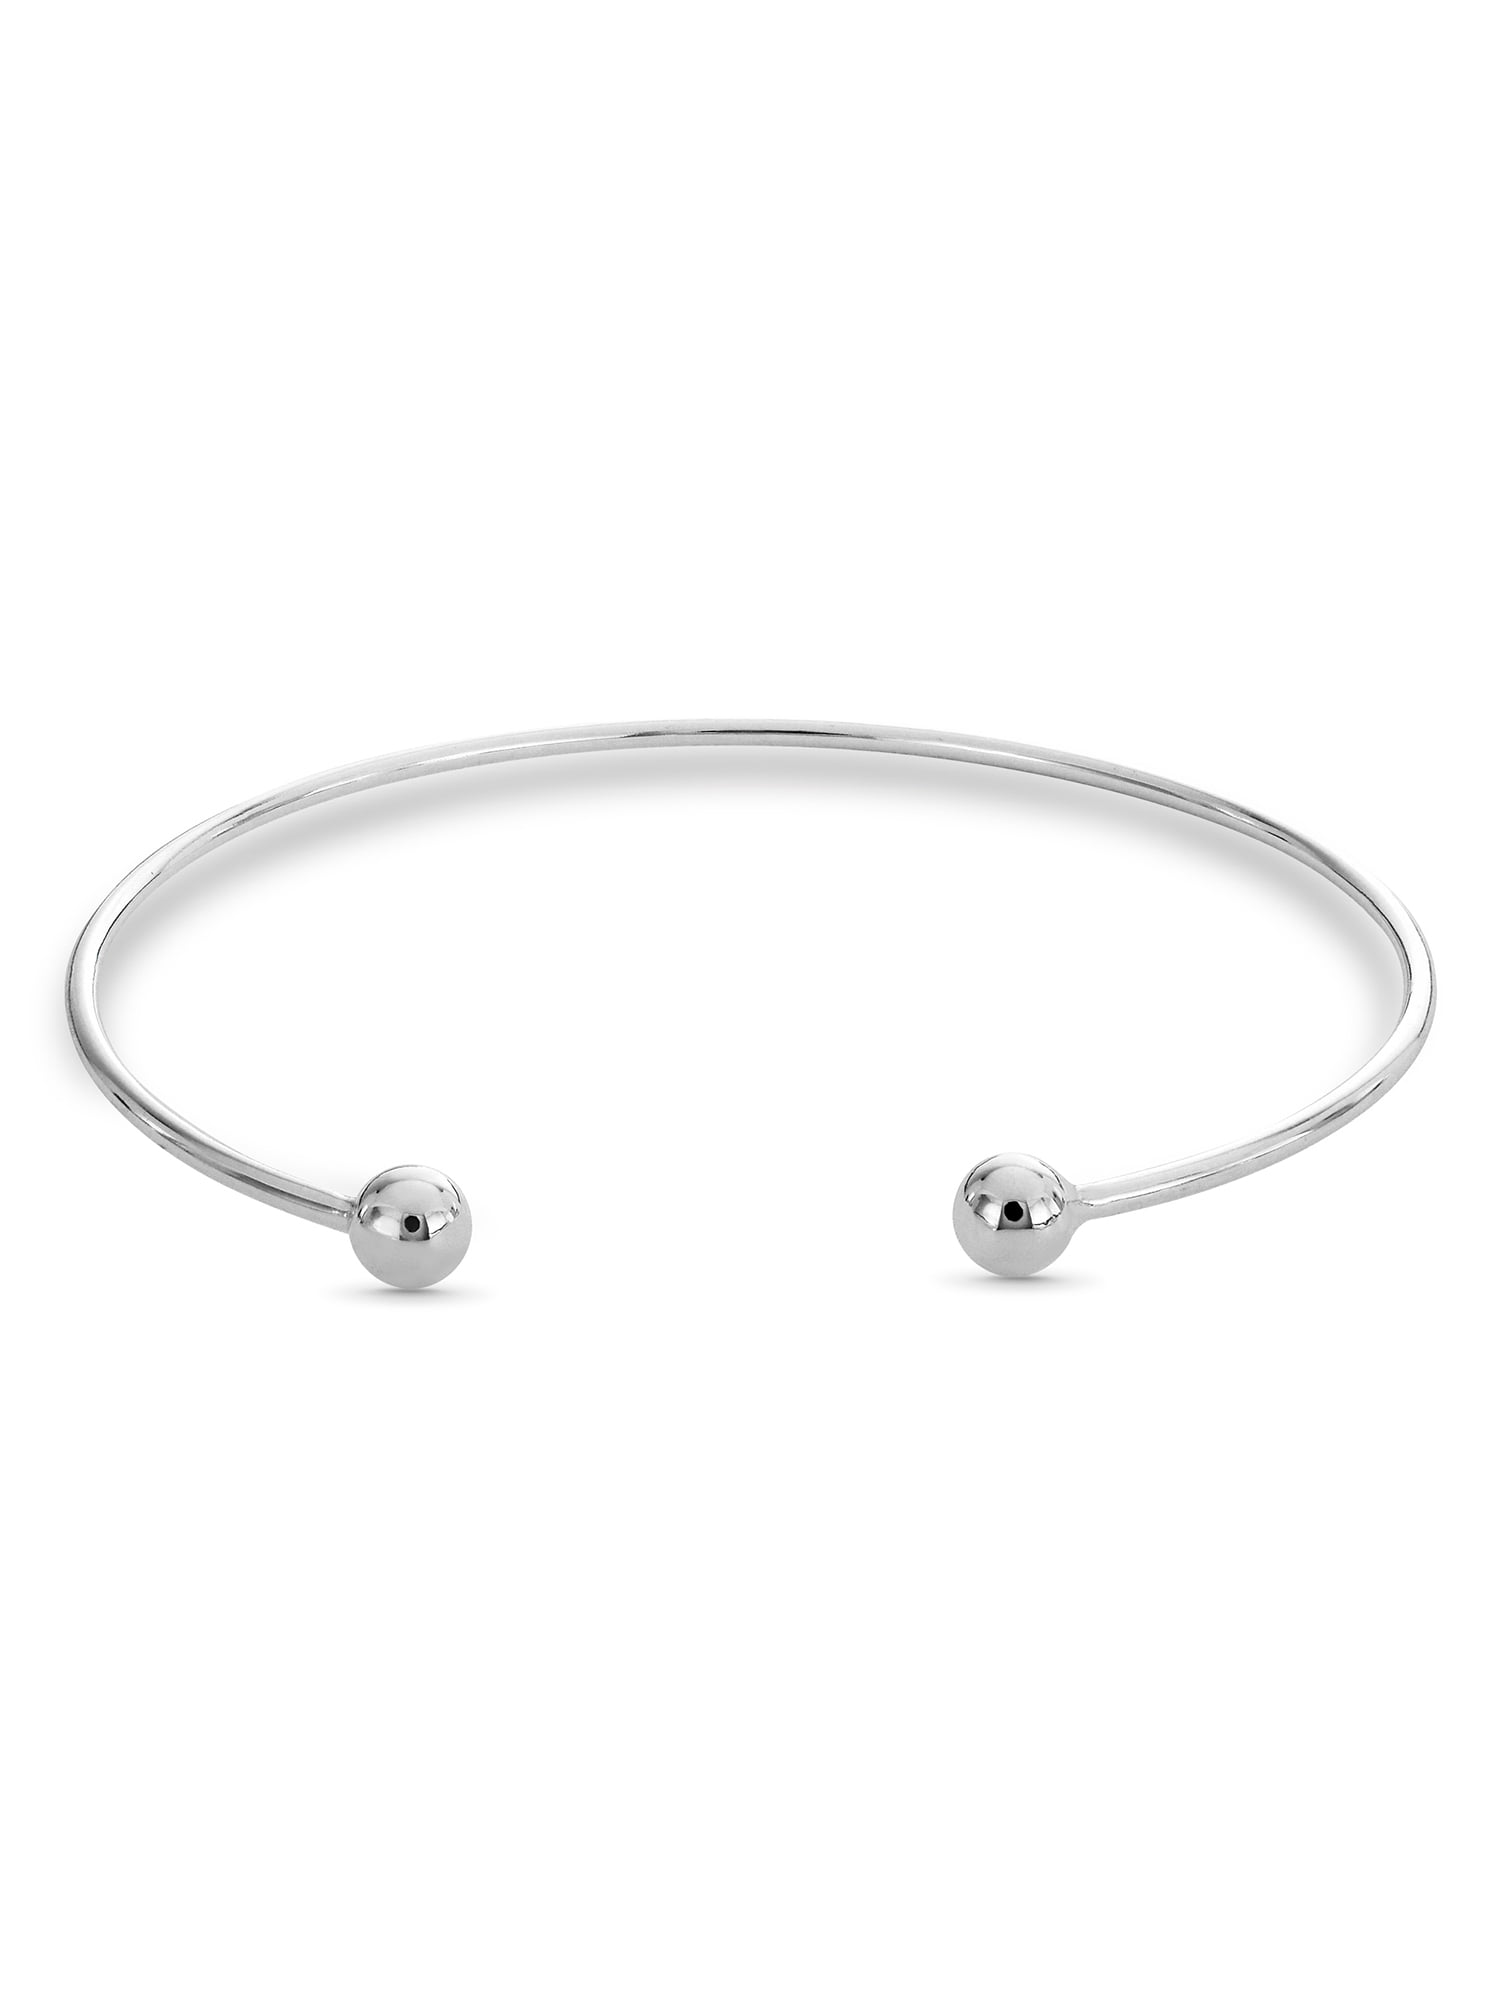 Silver Ball Open Cuff Bracelet - 925 sterling silver trendy fashion jewelry